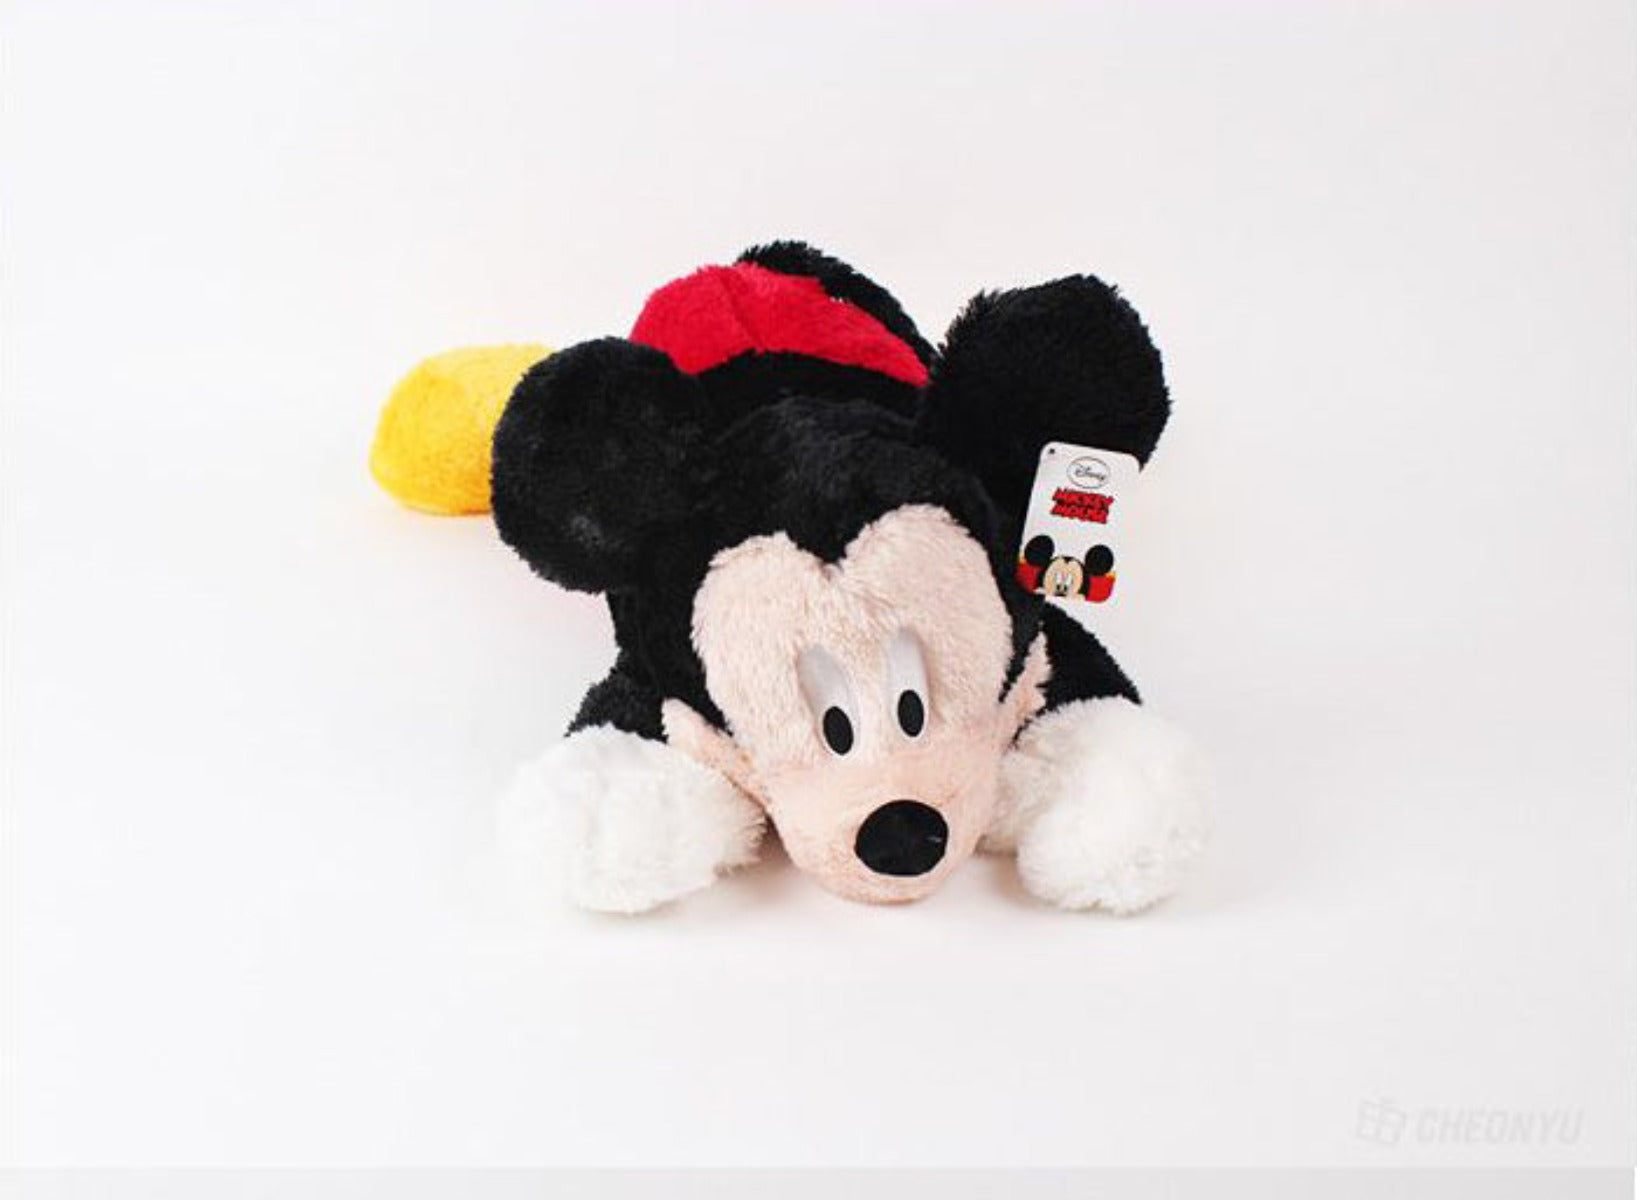 Plush - Micky Mouse